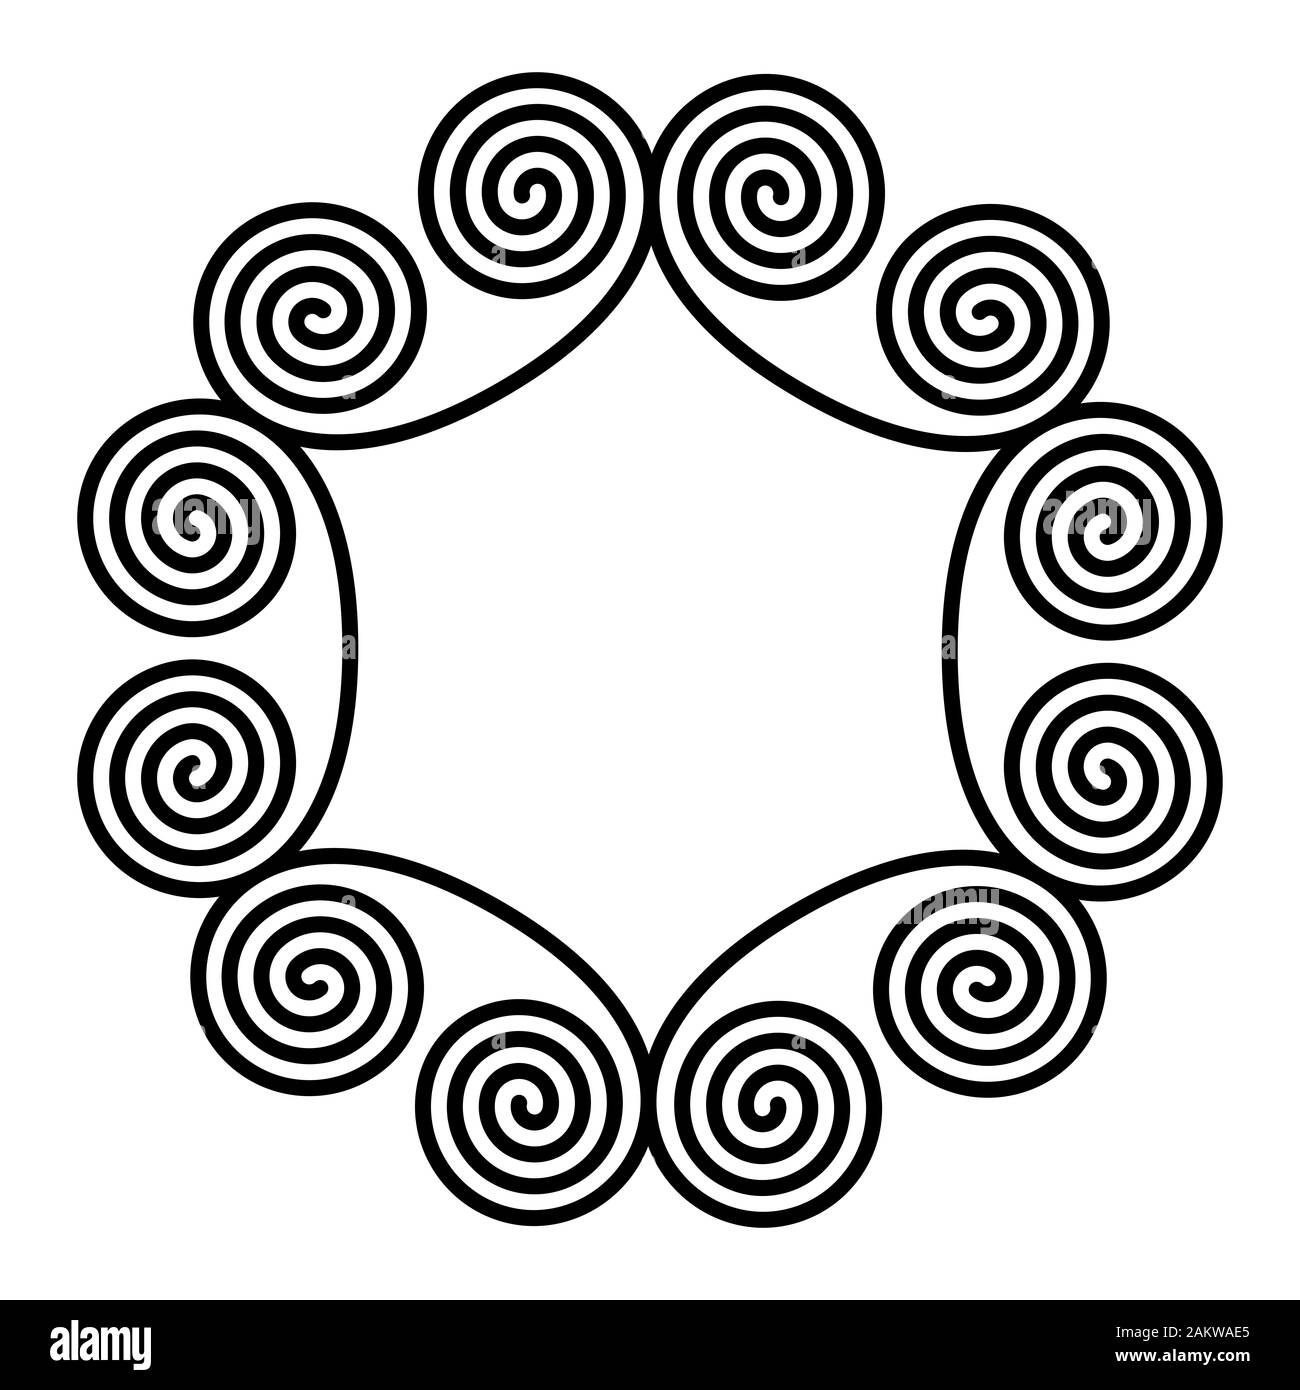 Kreis Rahmen aus doppelspirale Ornamente. Sechs linearen doppelte Spiralen bilden einen dekorativen Muster und Muster, die durch wiederholte Linien gebaut. Stockfoto